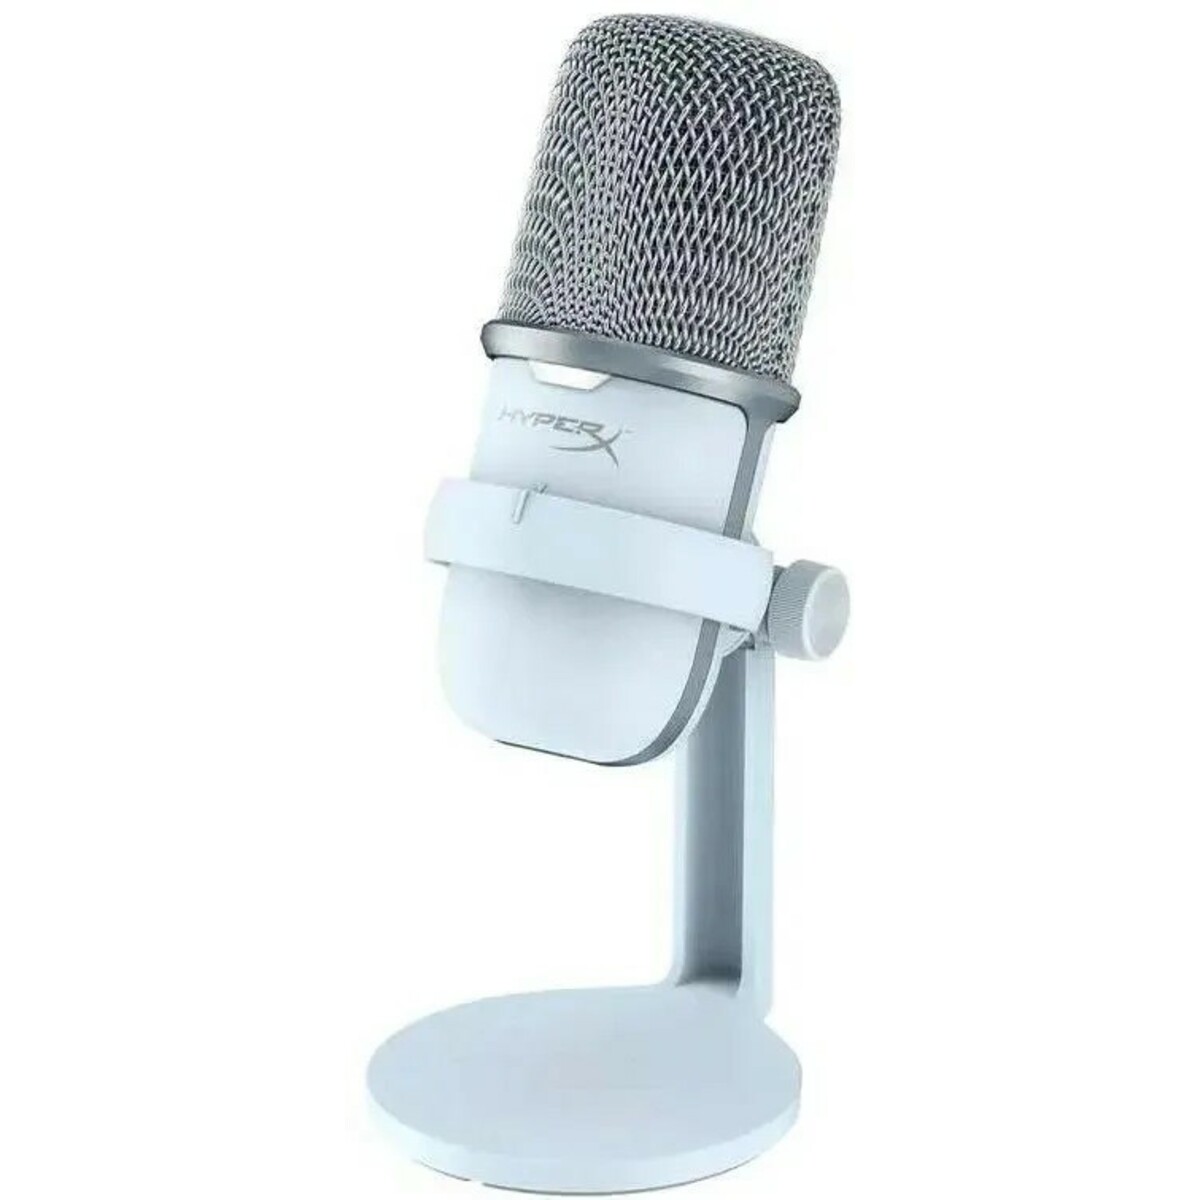 Микрофон проводной HyperX SoloCast, белый